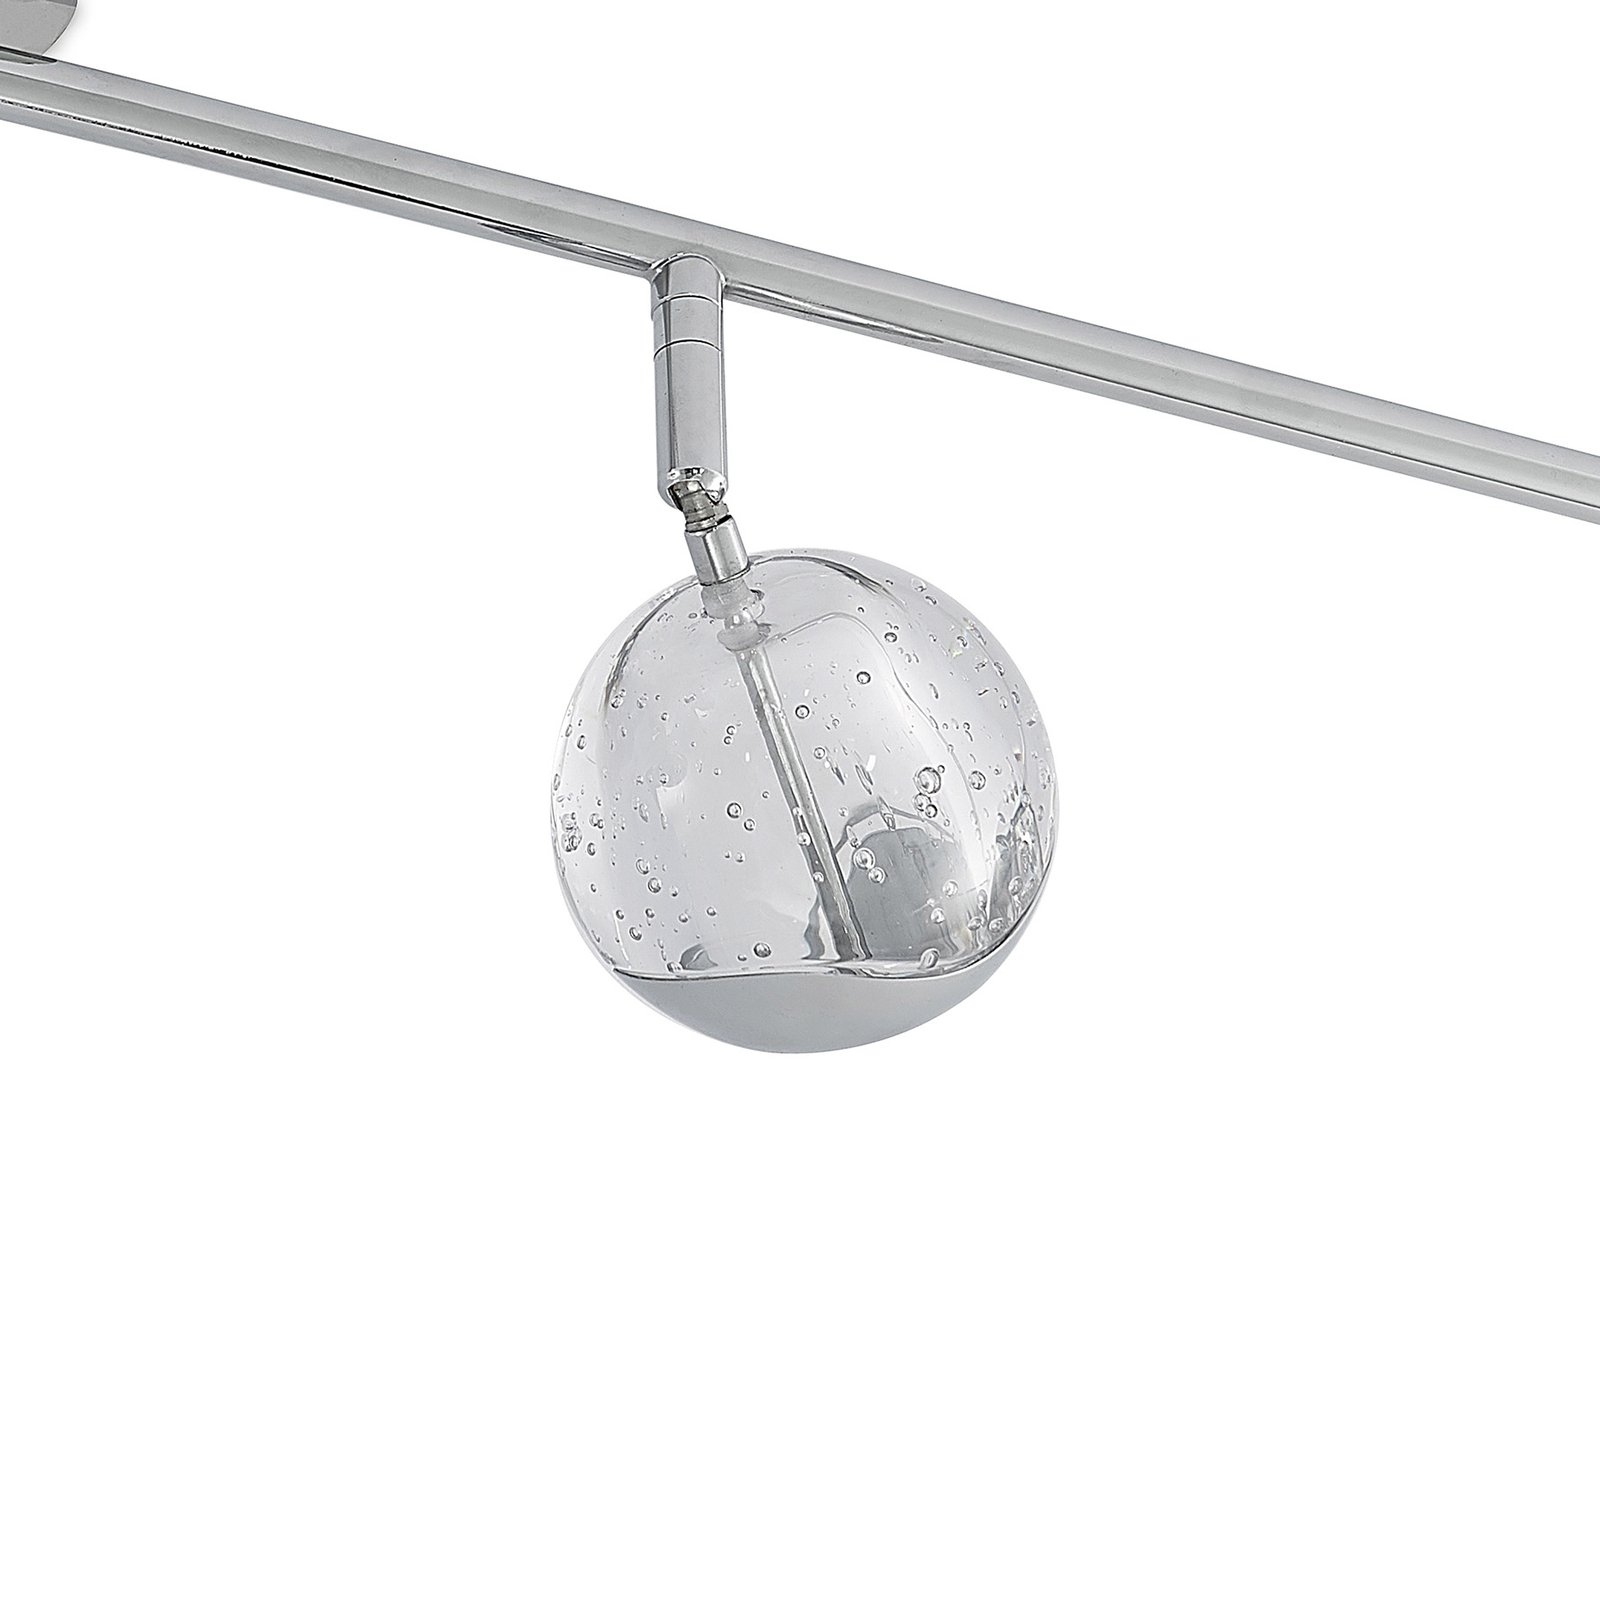 Lucande Kilio spot plafond LED, à 5 lampes, chromé